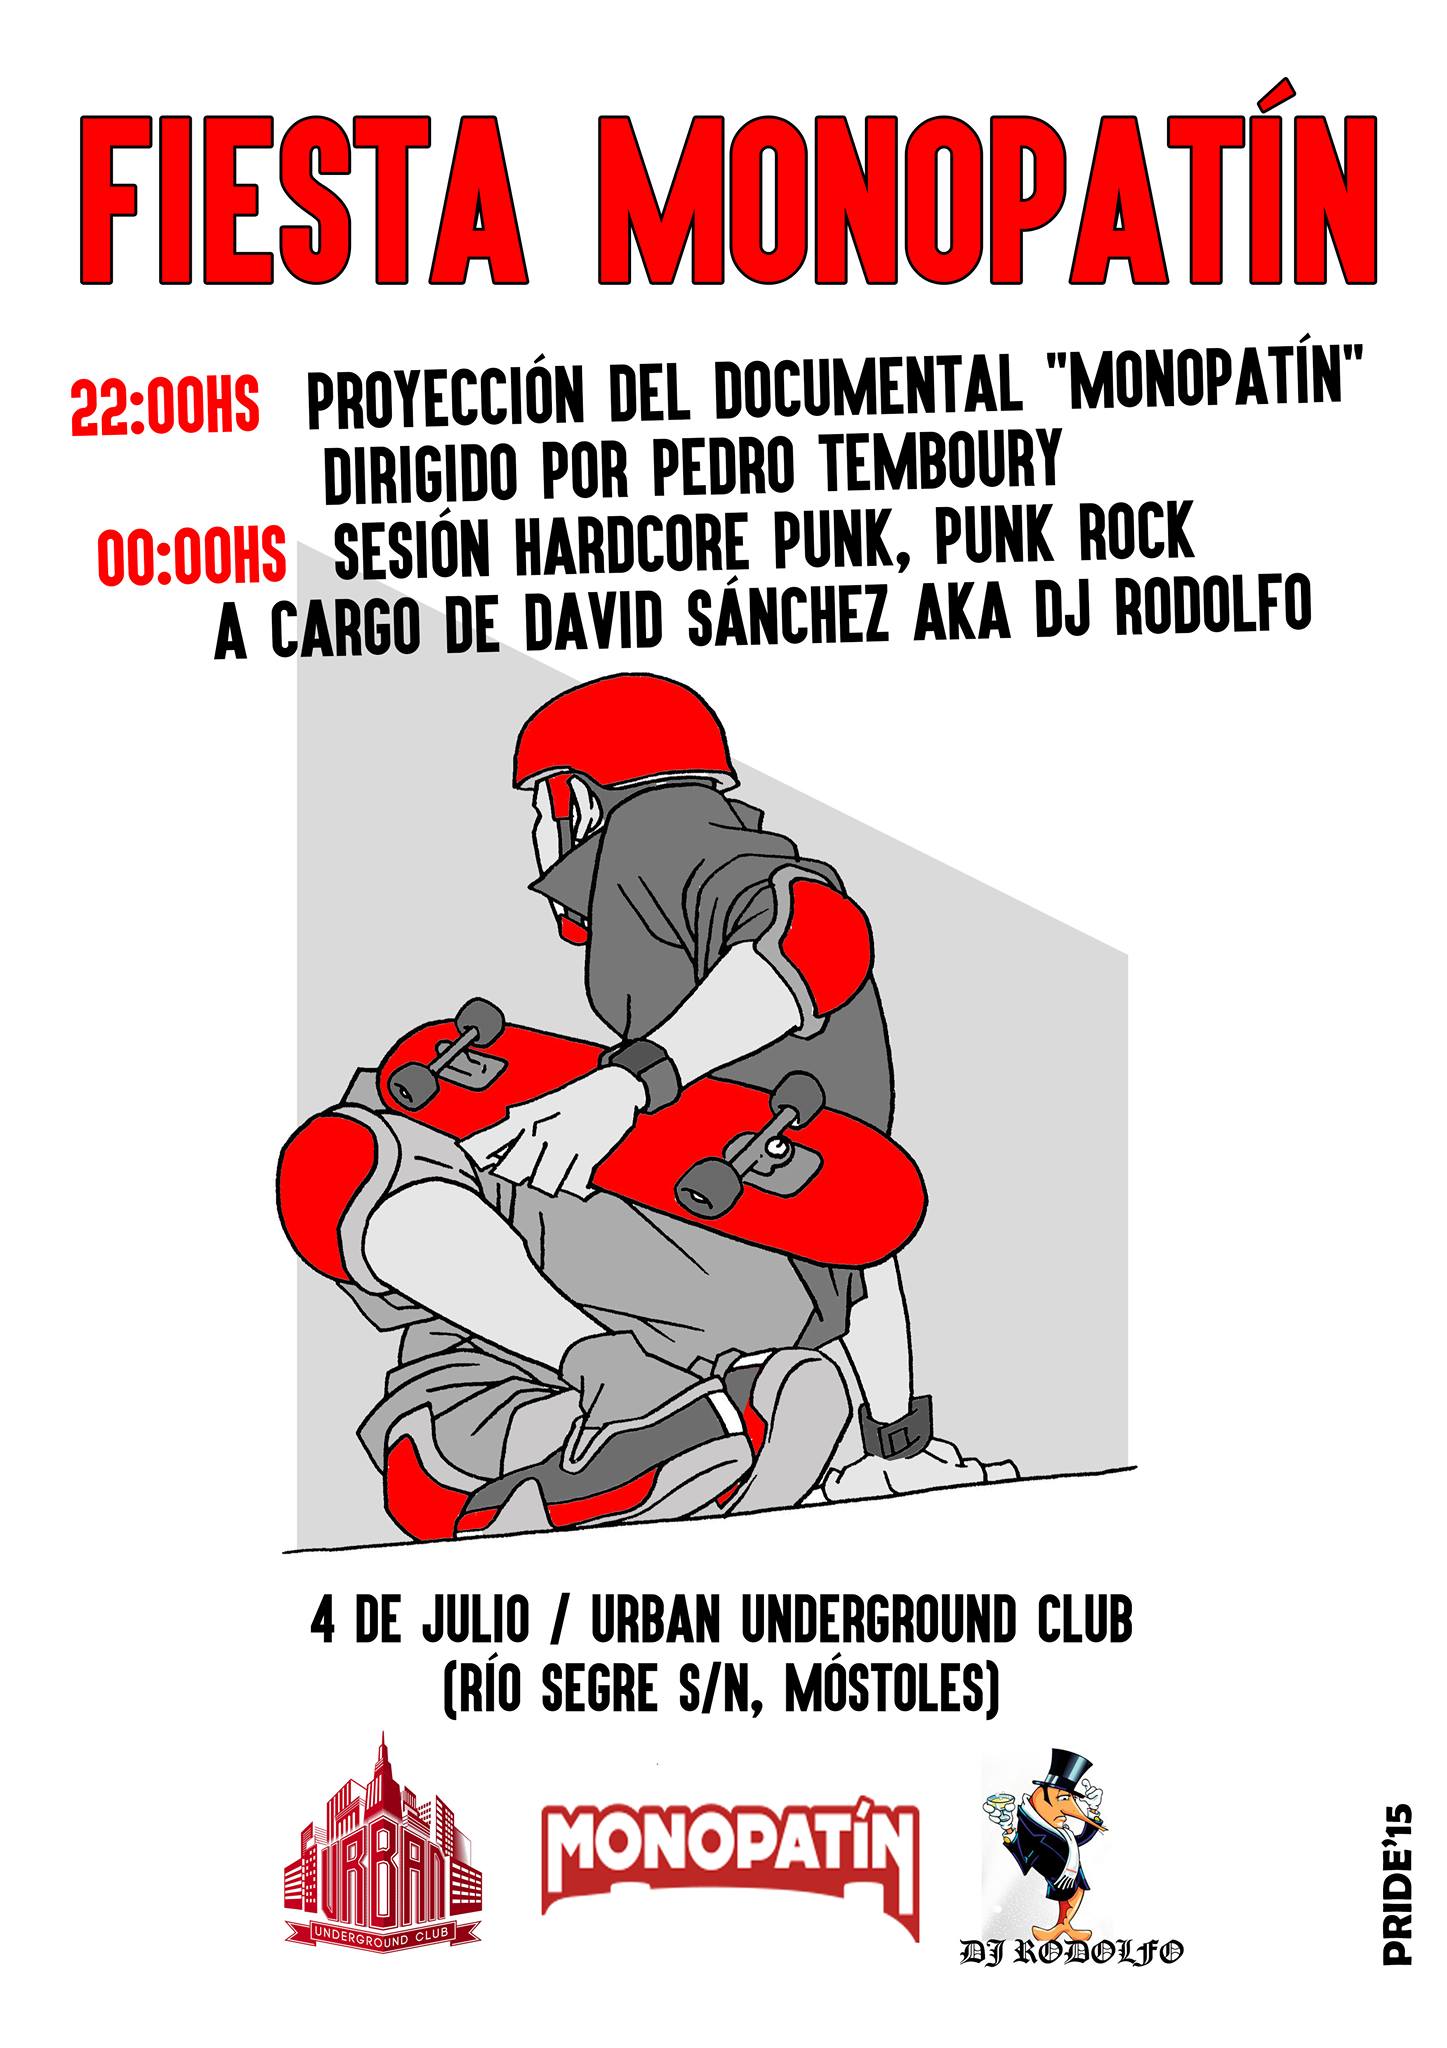 Monopatin en Urban + DJ David Sanchez